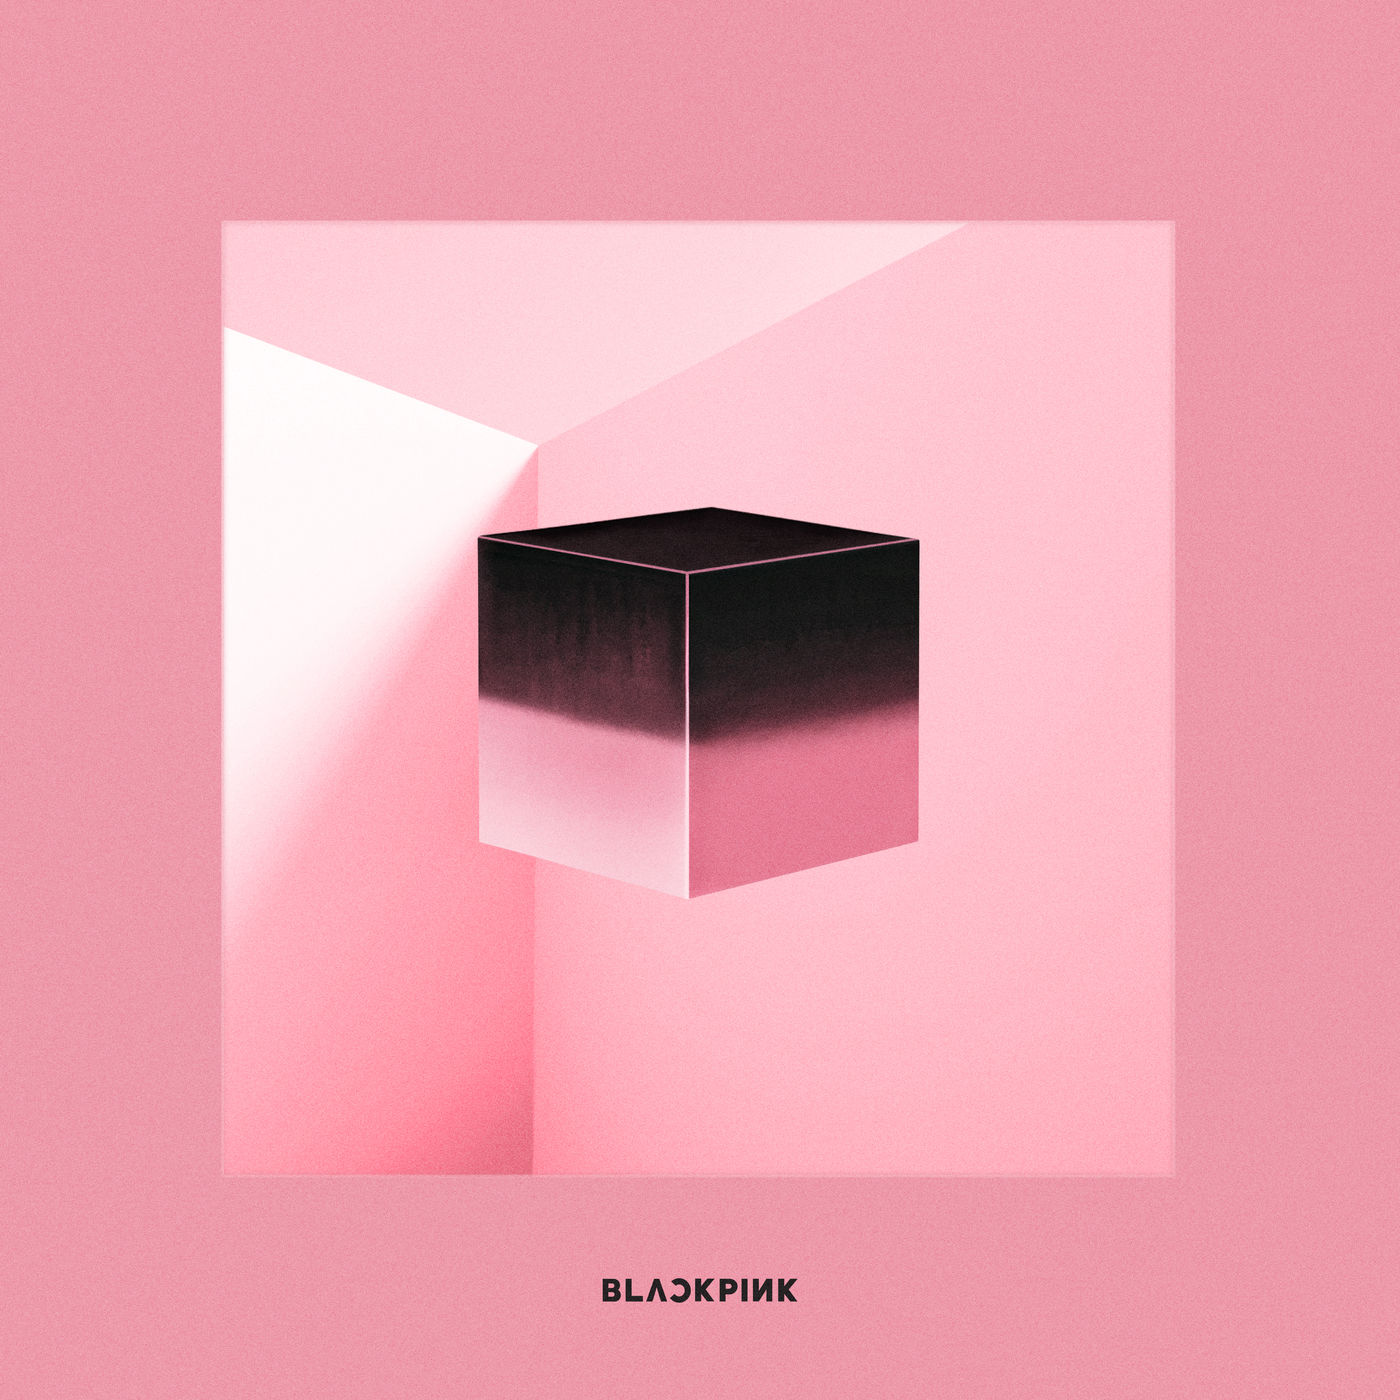 دانلود آلبوم BLACKPINK به نام SQUARE UP (2018) با کیفیت FLAC 🔥